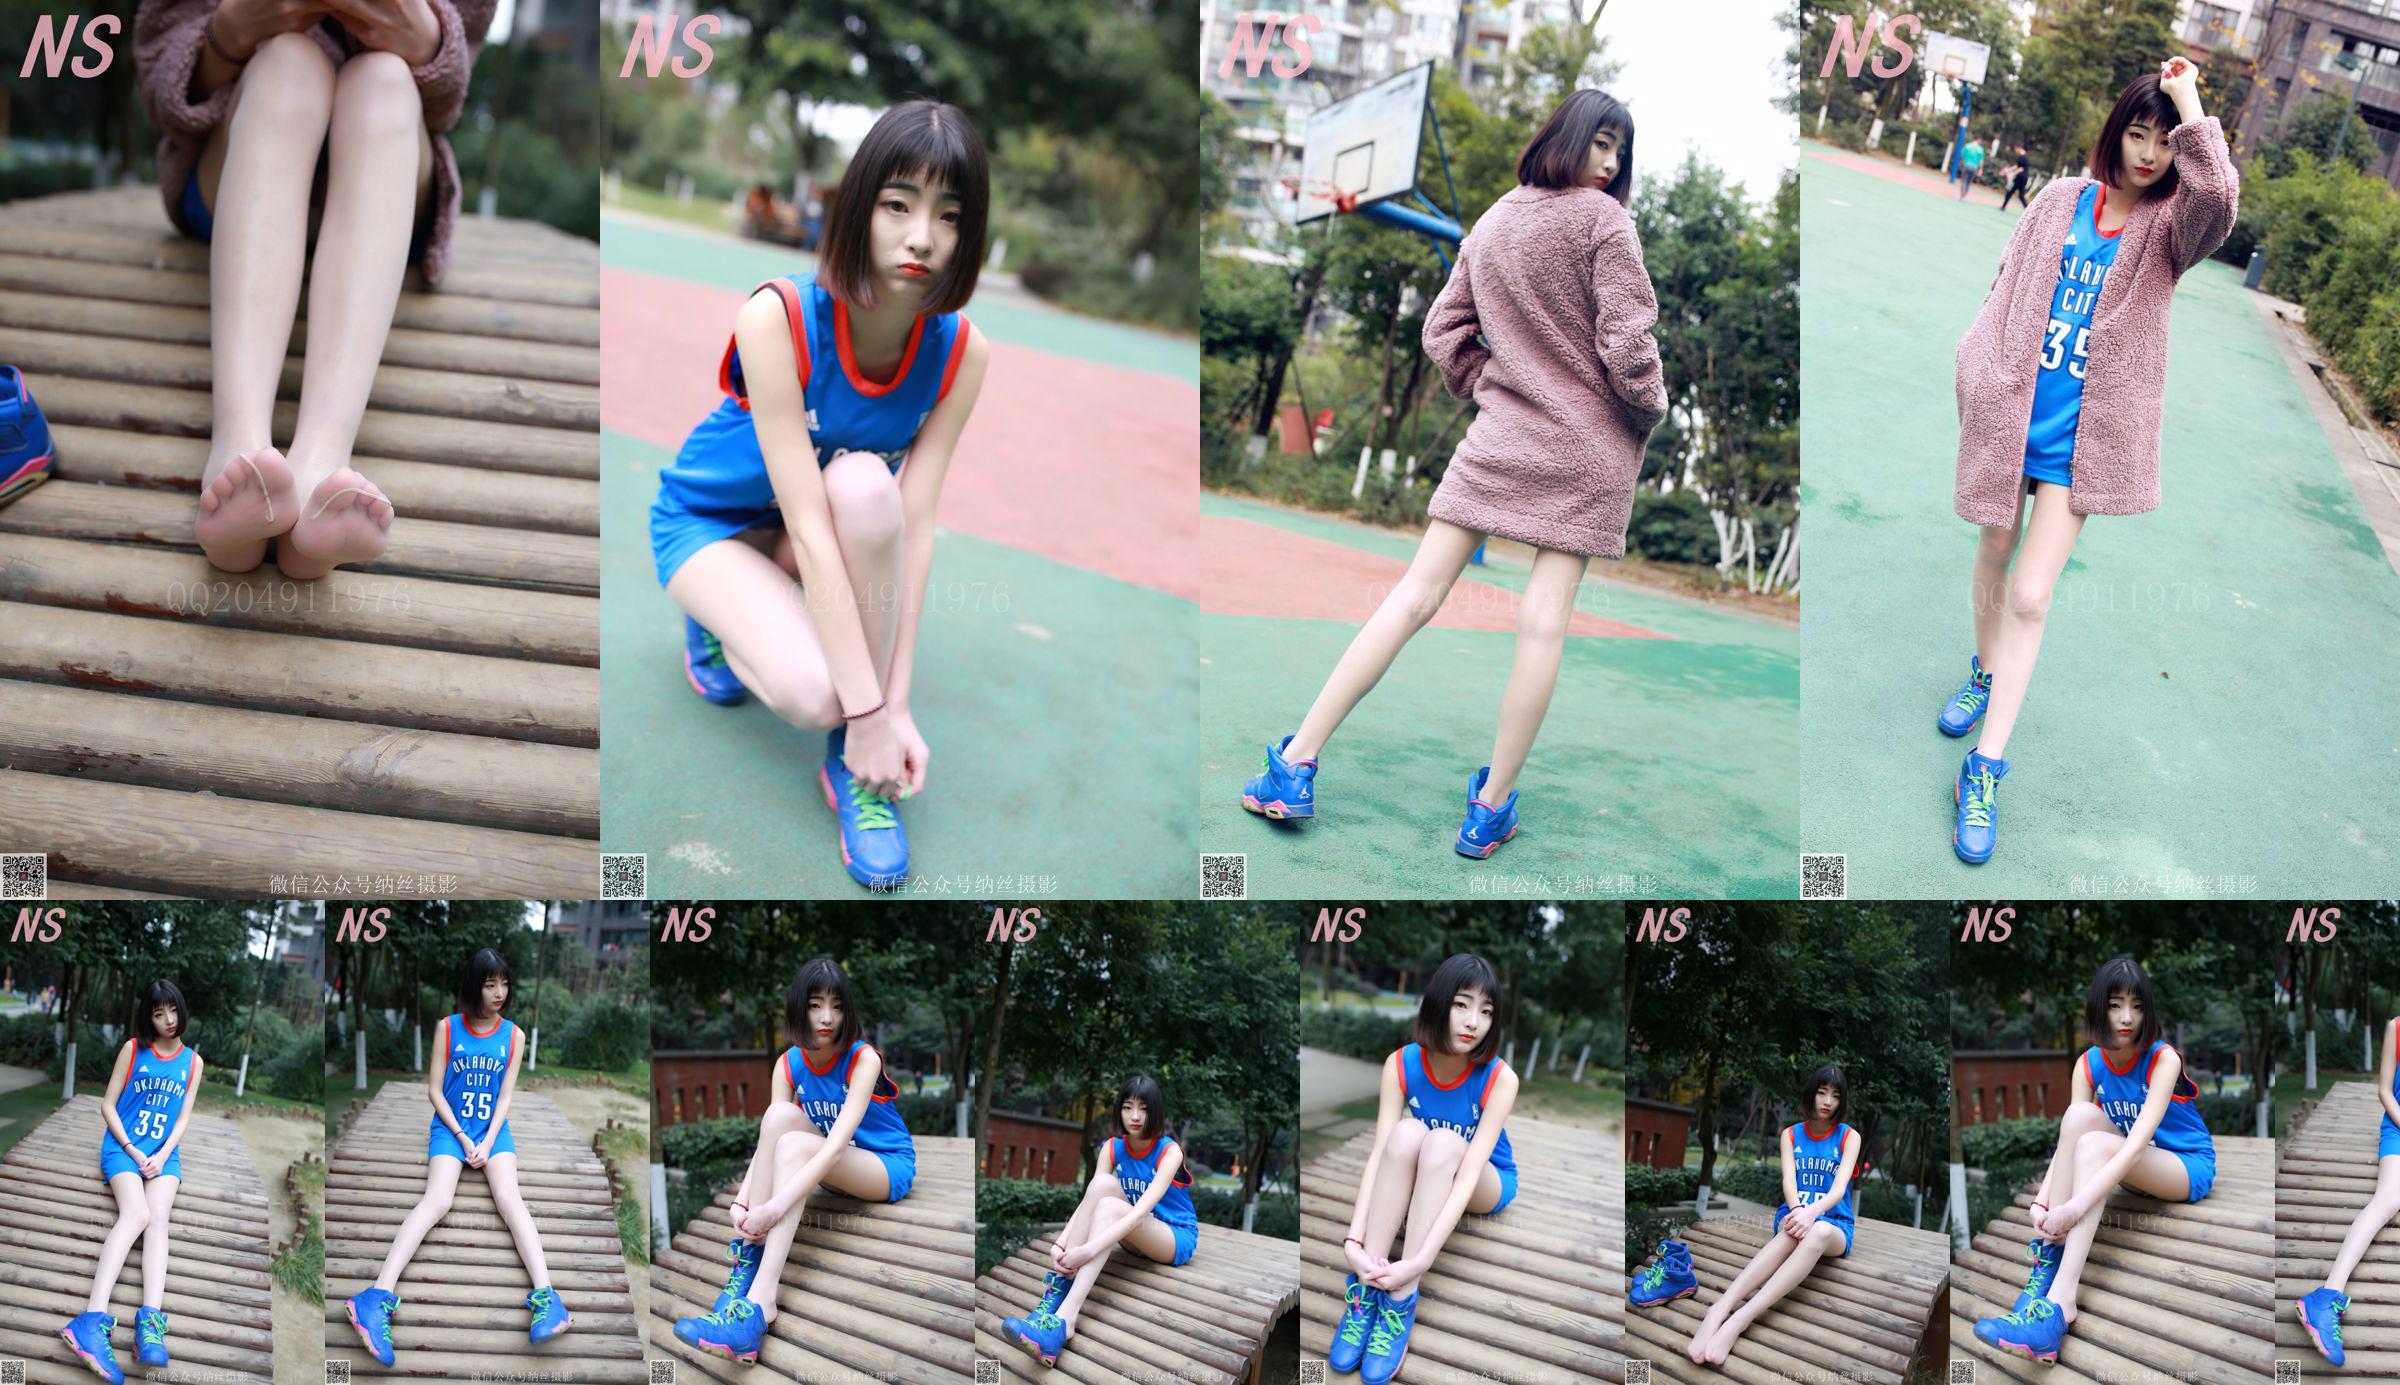 Chen Yujie "Basketball Girl" [Nasi Photography] SỐ 107 No.563130 Trang 6